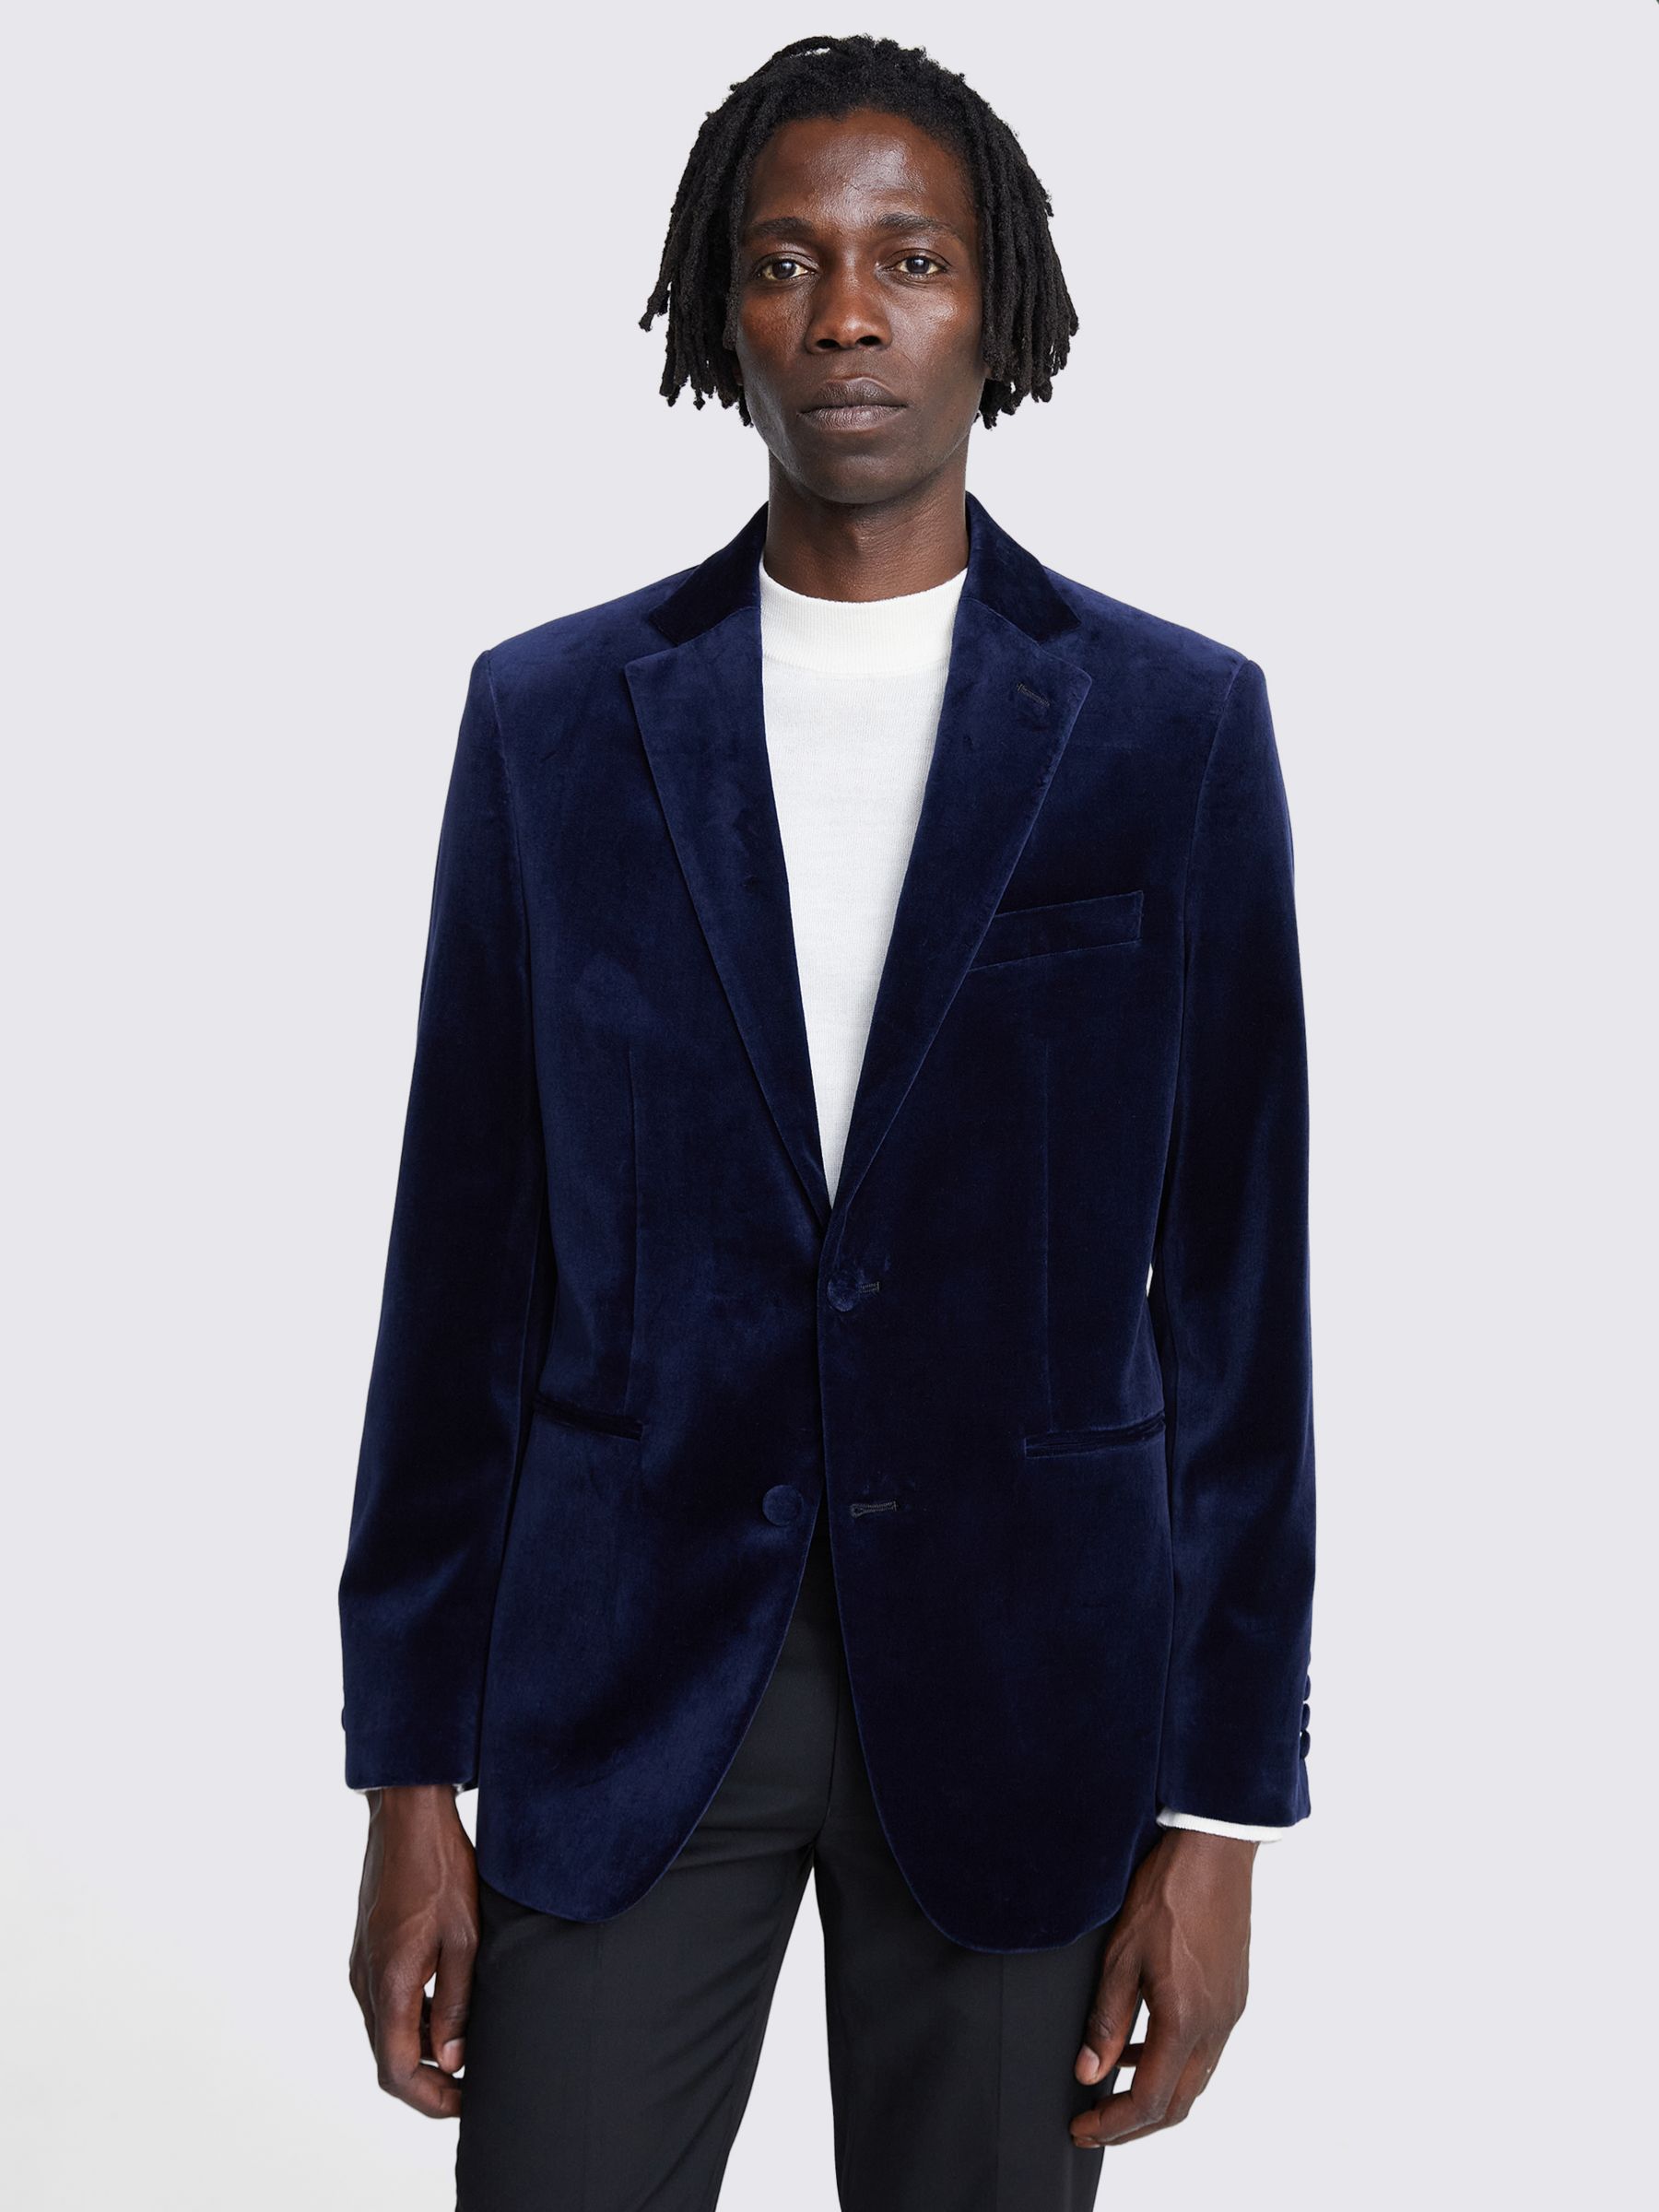 Moss Velvet Tailored Fit Suit Jacket, Blue, 38R